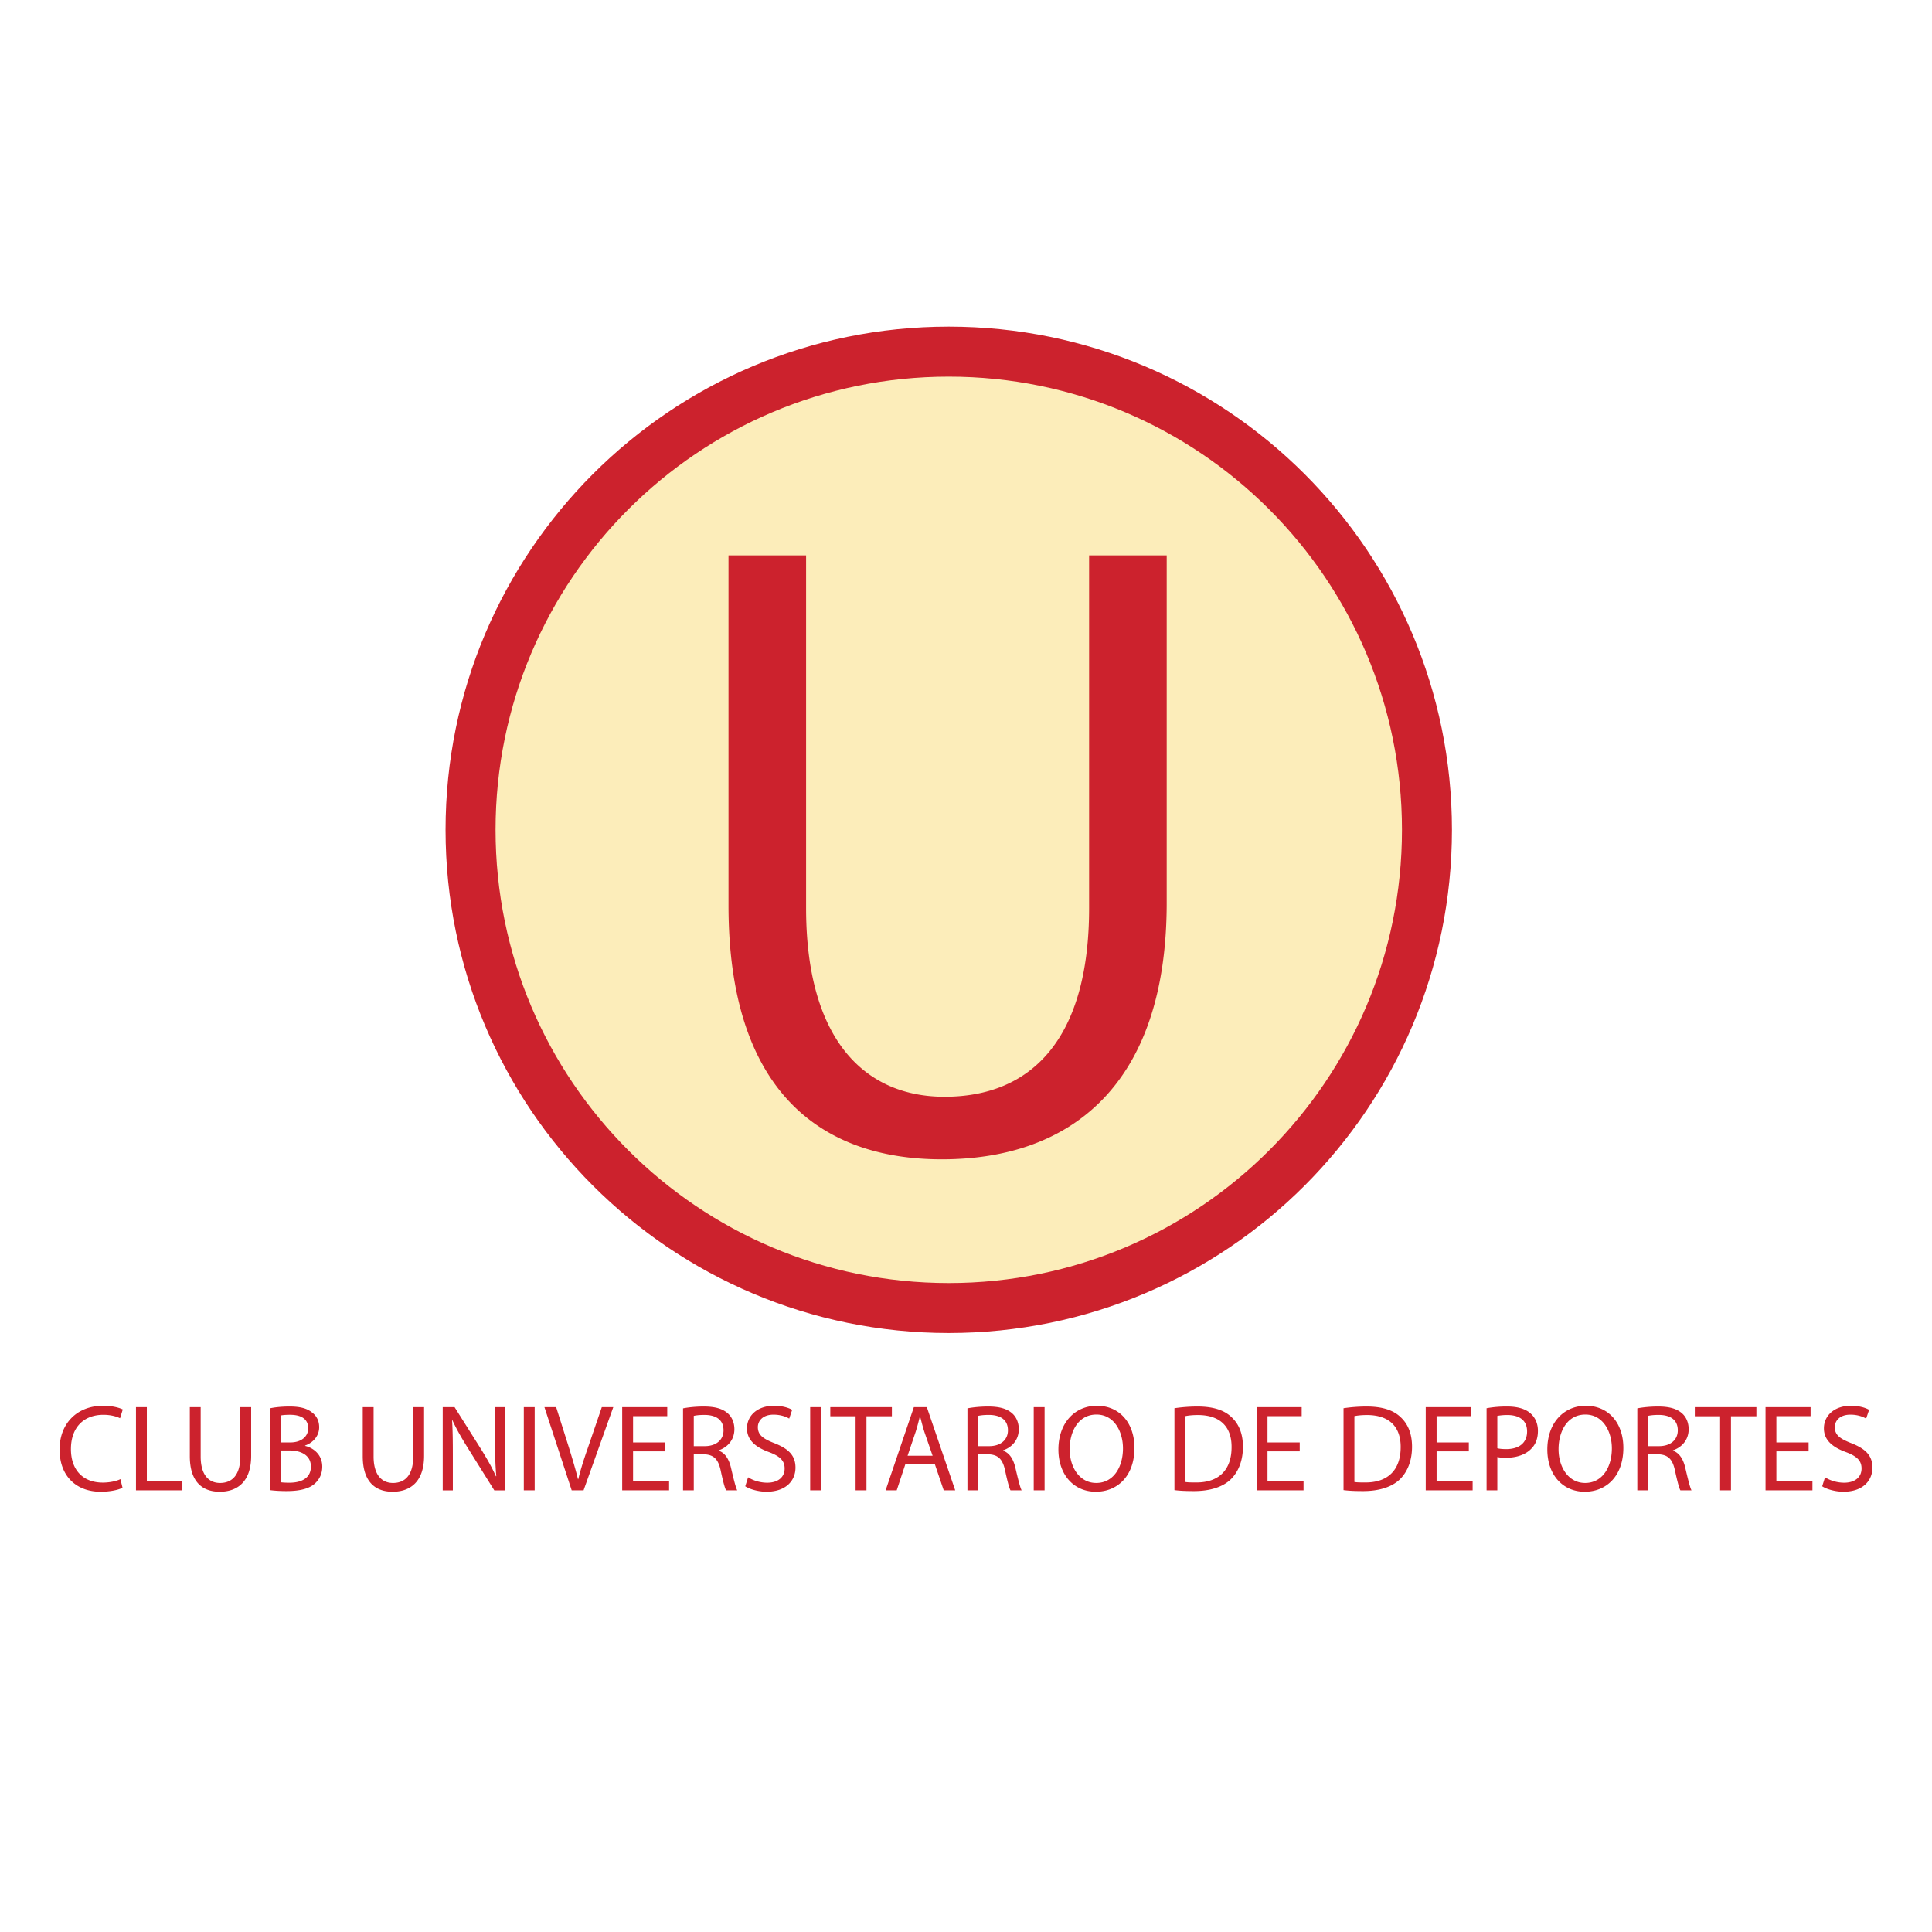 PKL – U Mumba logo colors